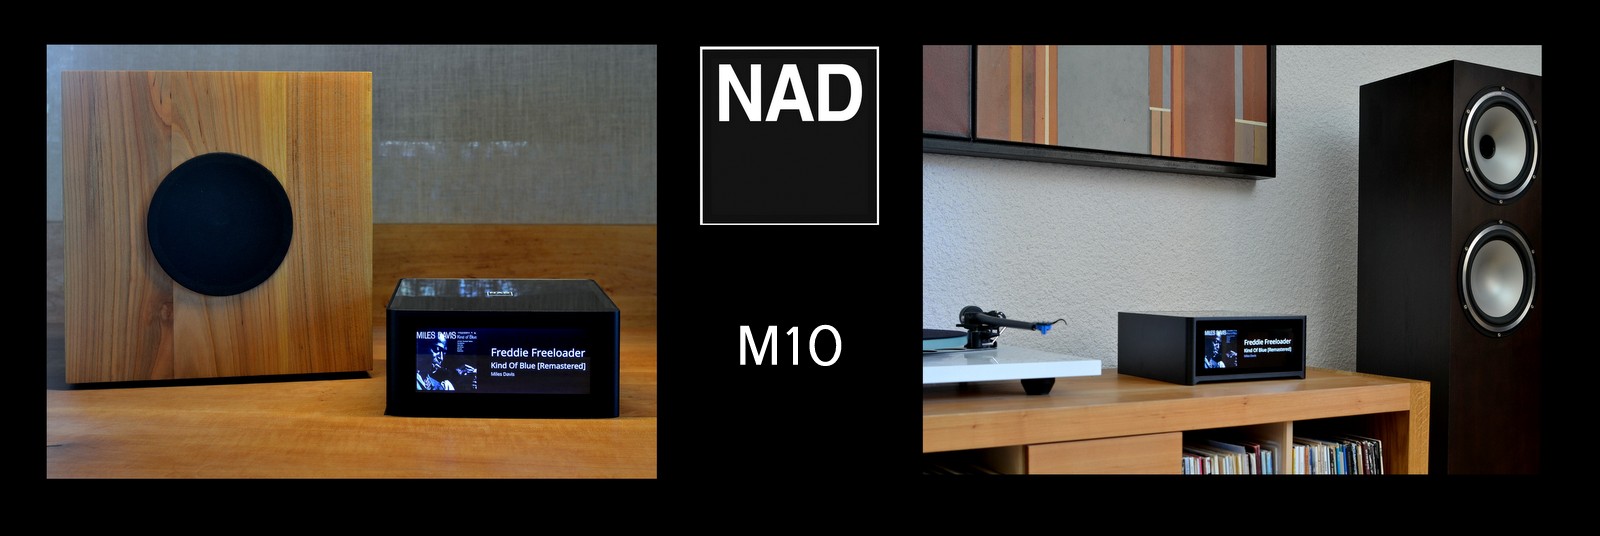 M10 - das neue Master-Piece von NAD